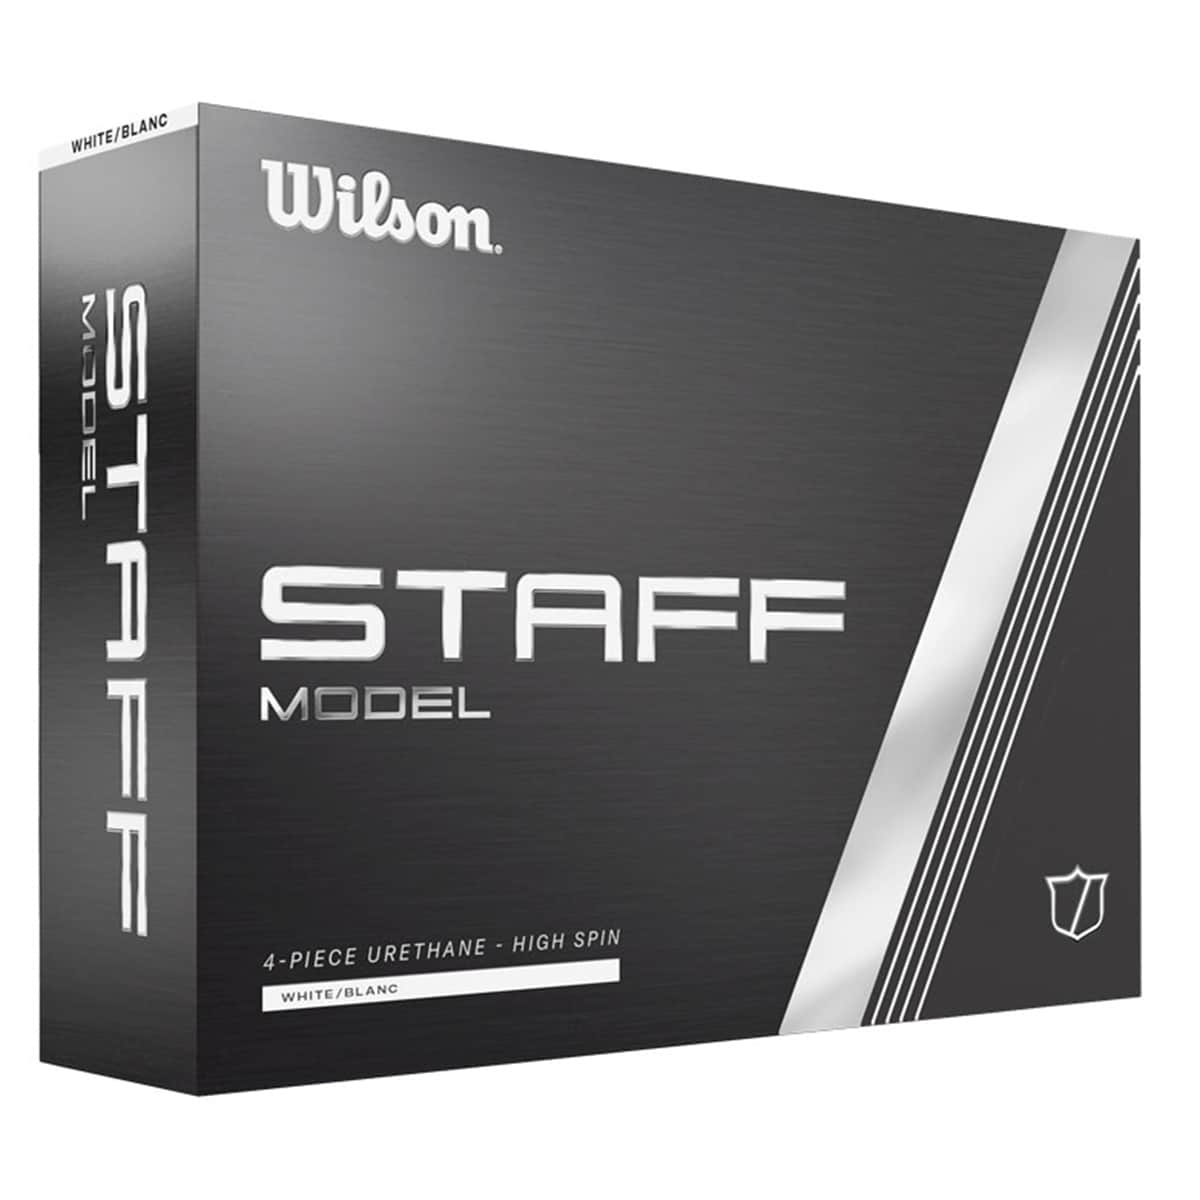 Wilson Staff Model Golf Ball Review